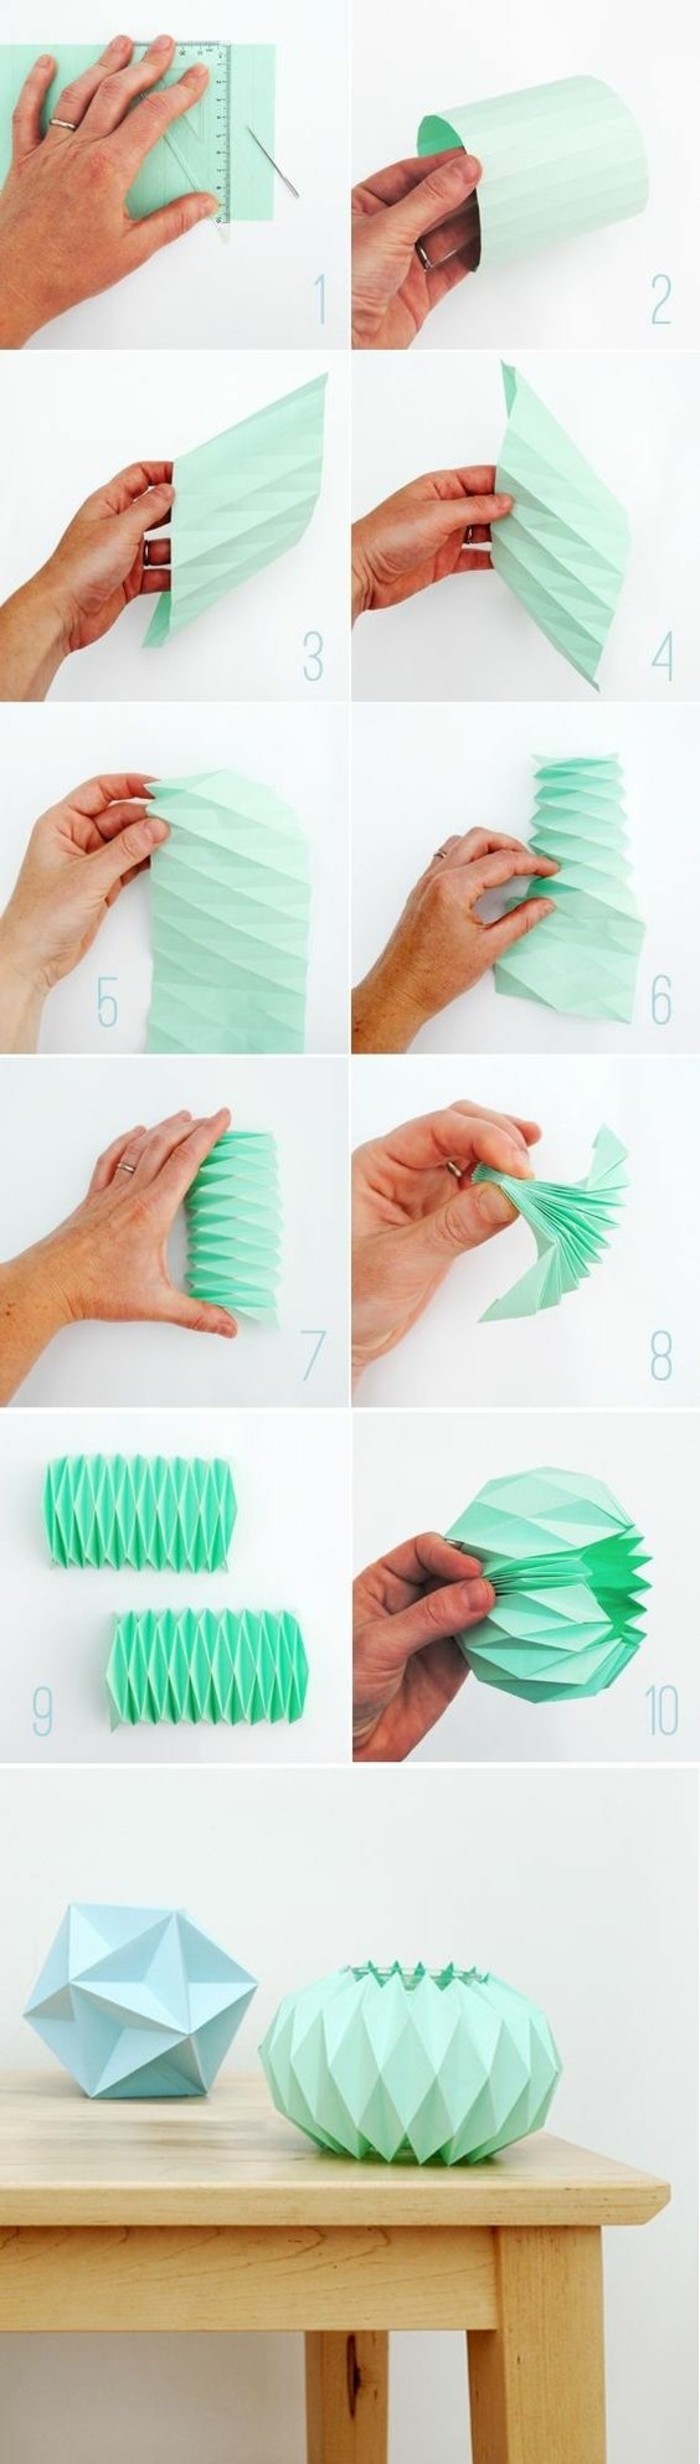 abat-jour-origami-papier-a-faire-soi-meme-pliage-de-papier-special-pour-fabriquer-un-lampadaire